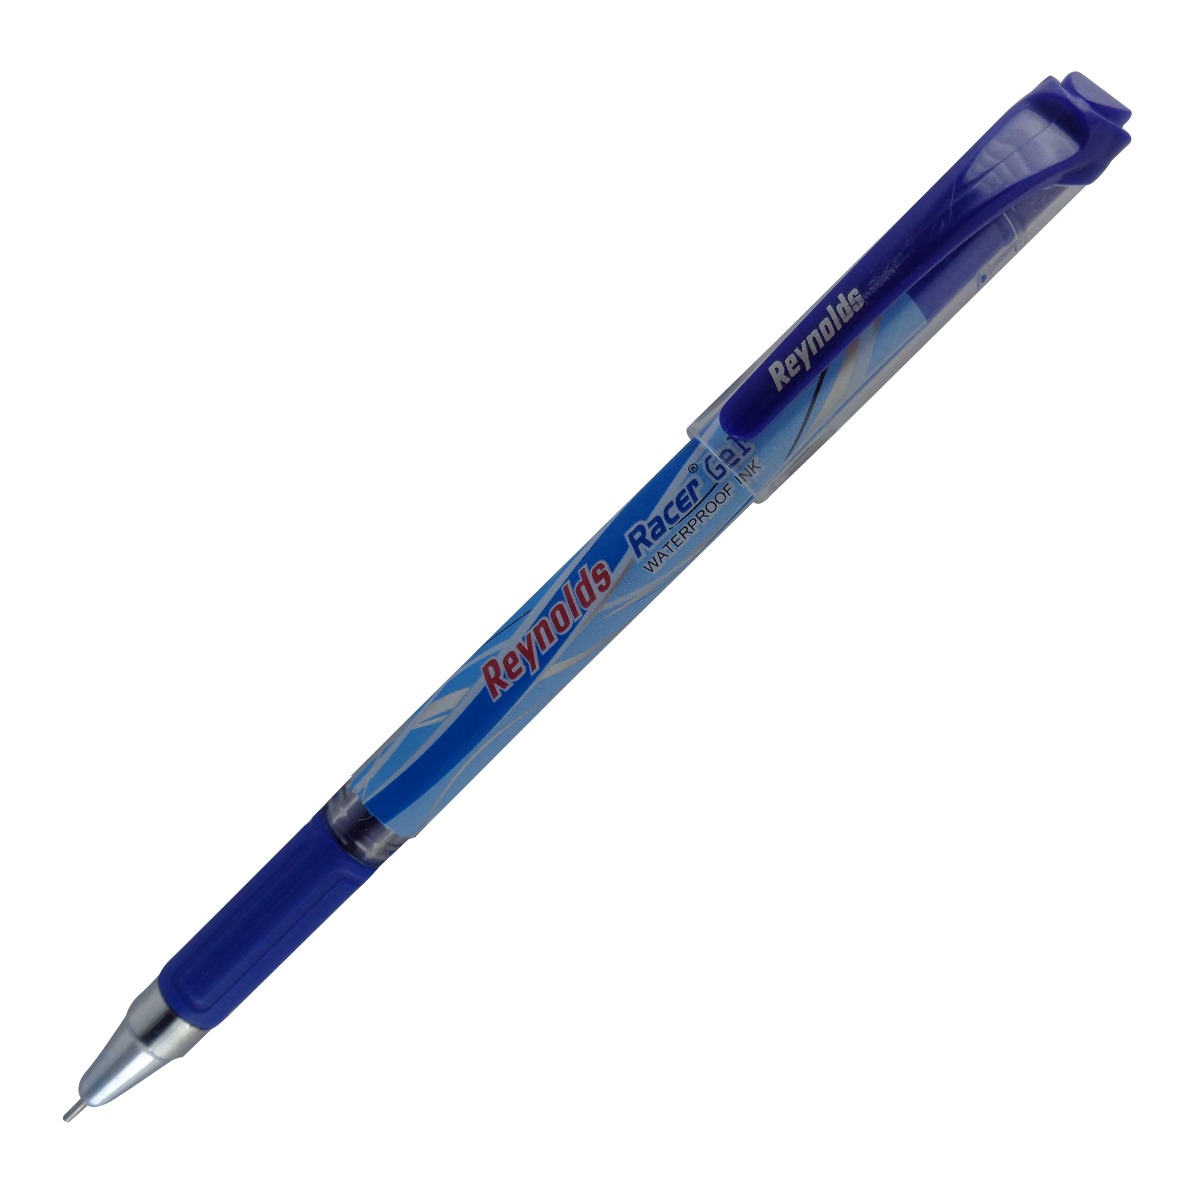 Reynolds 15034 Racer gel Blue color body with fine tip blue ink cap type gel pen